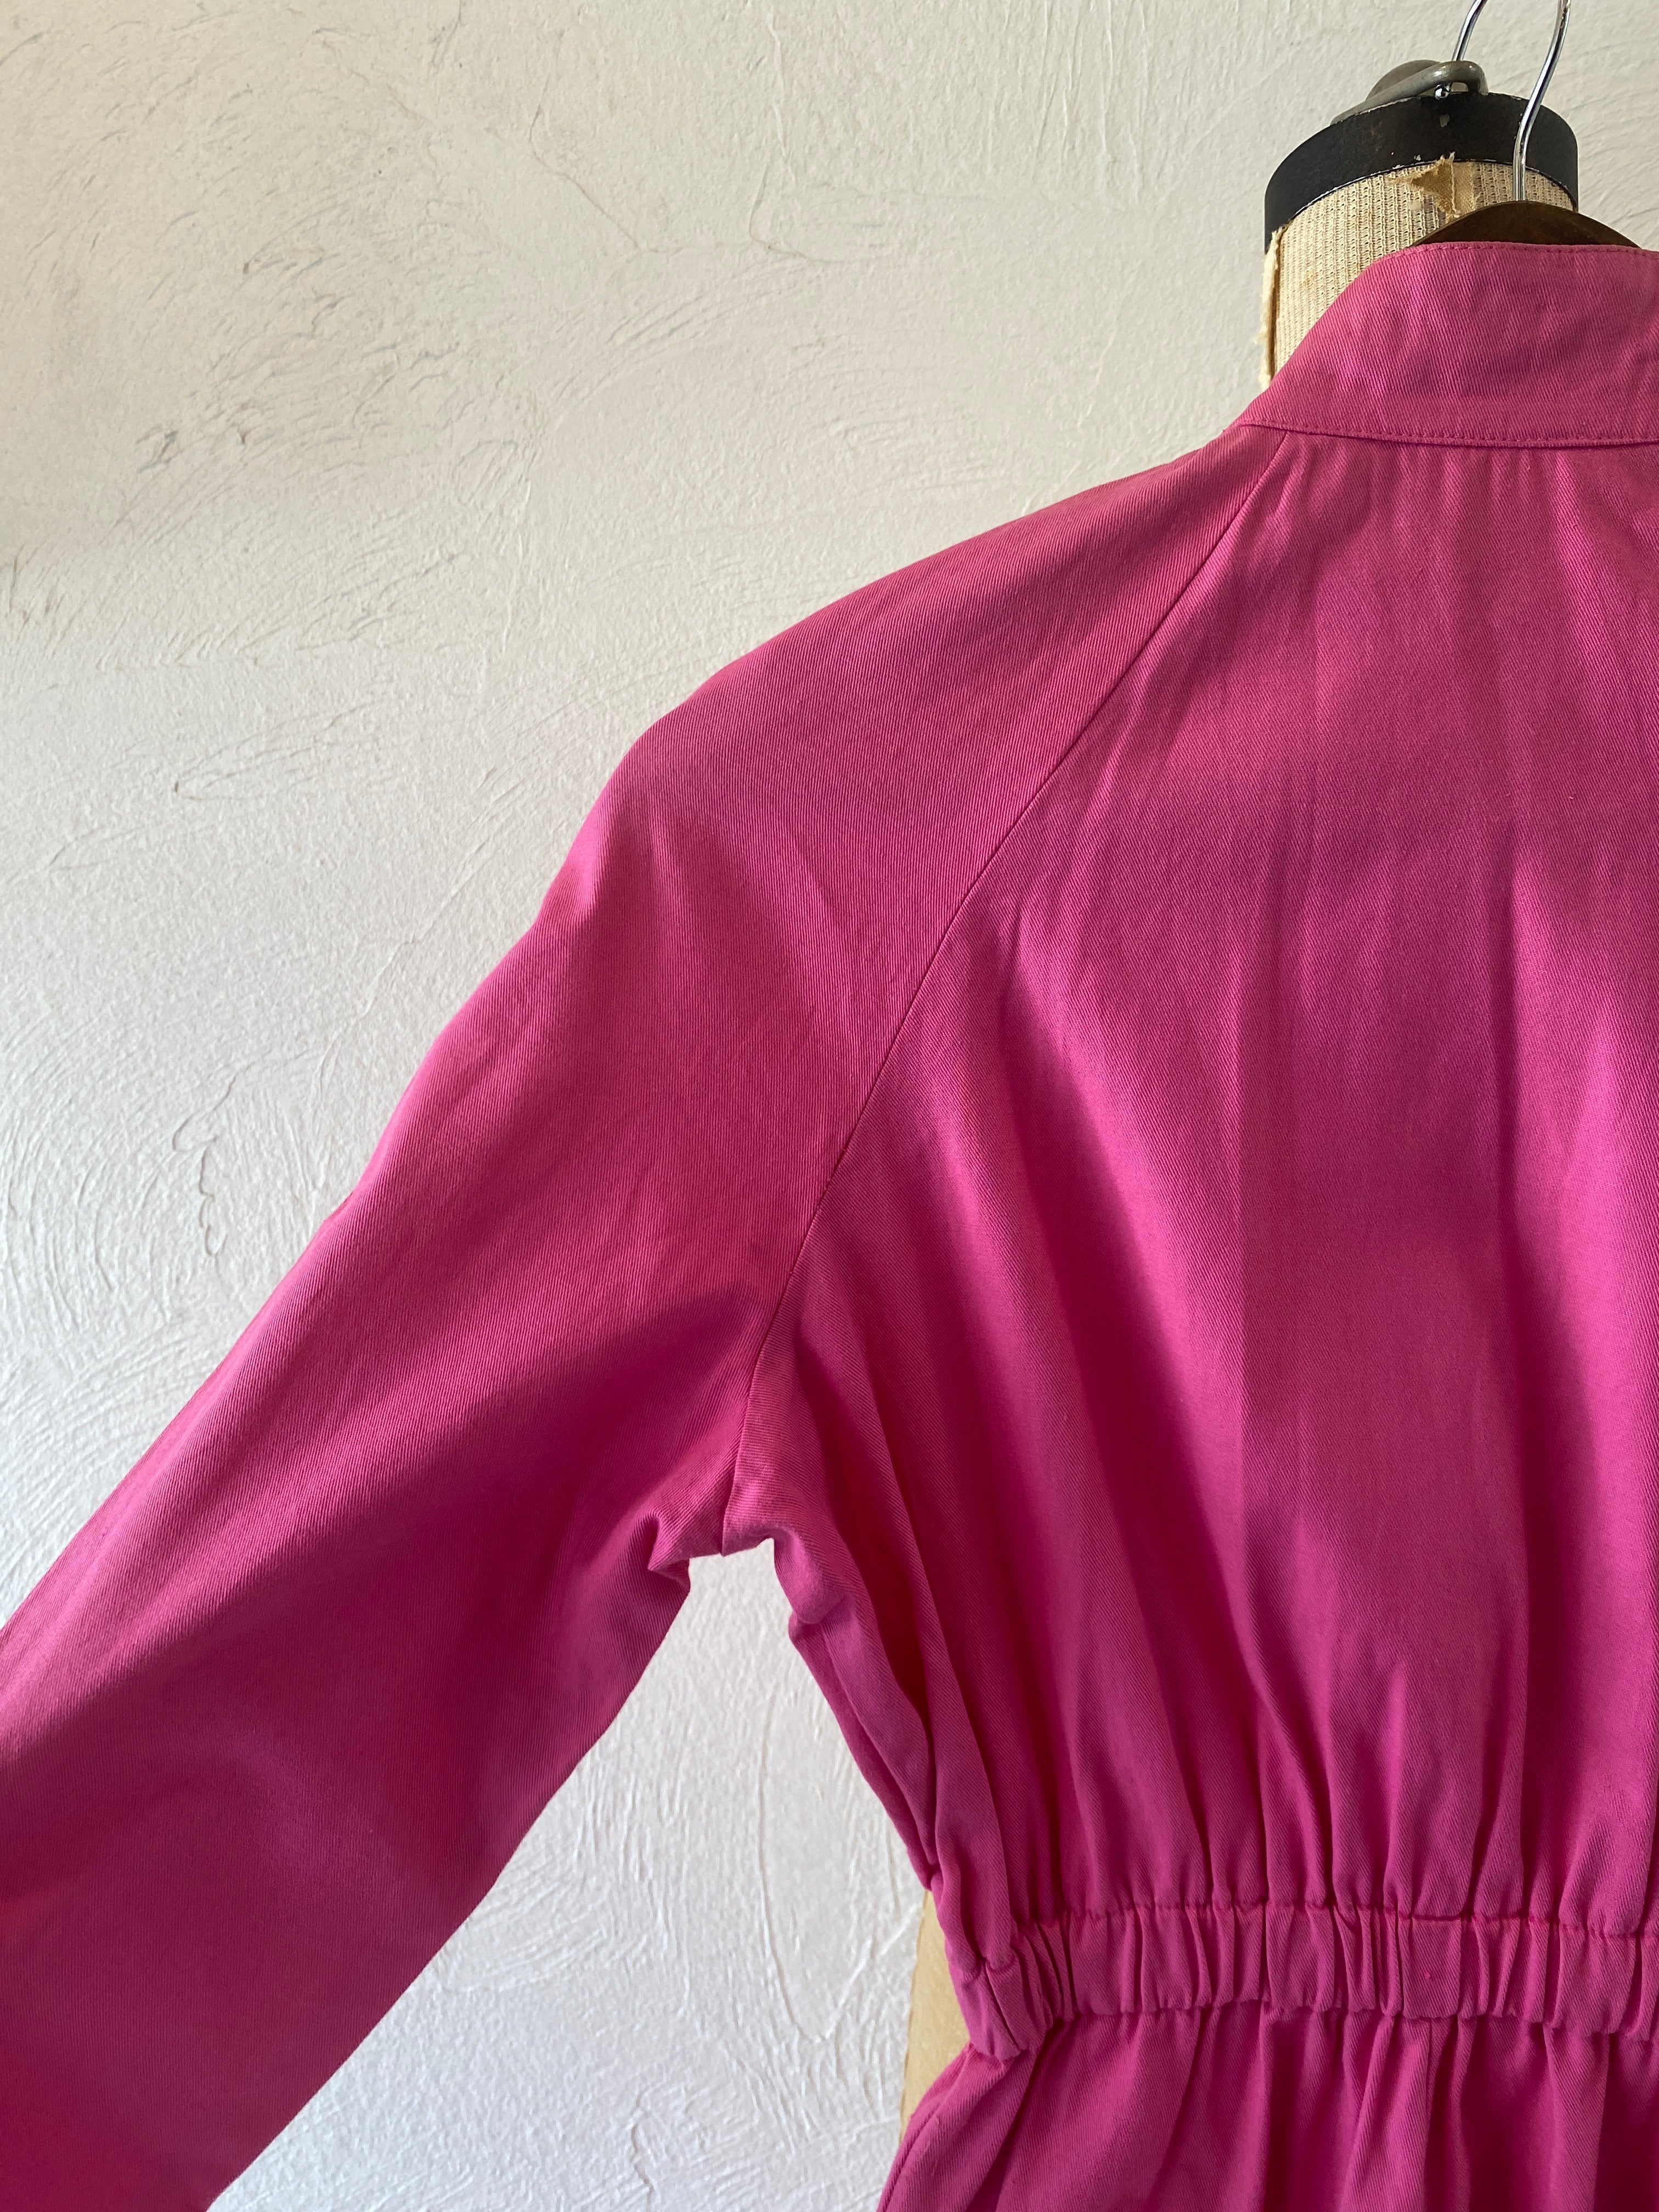 zip pink jump suit